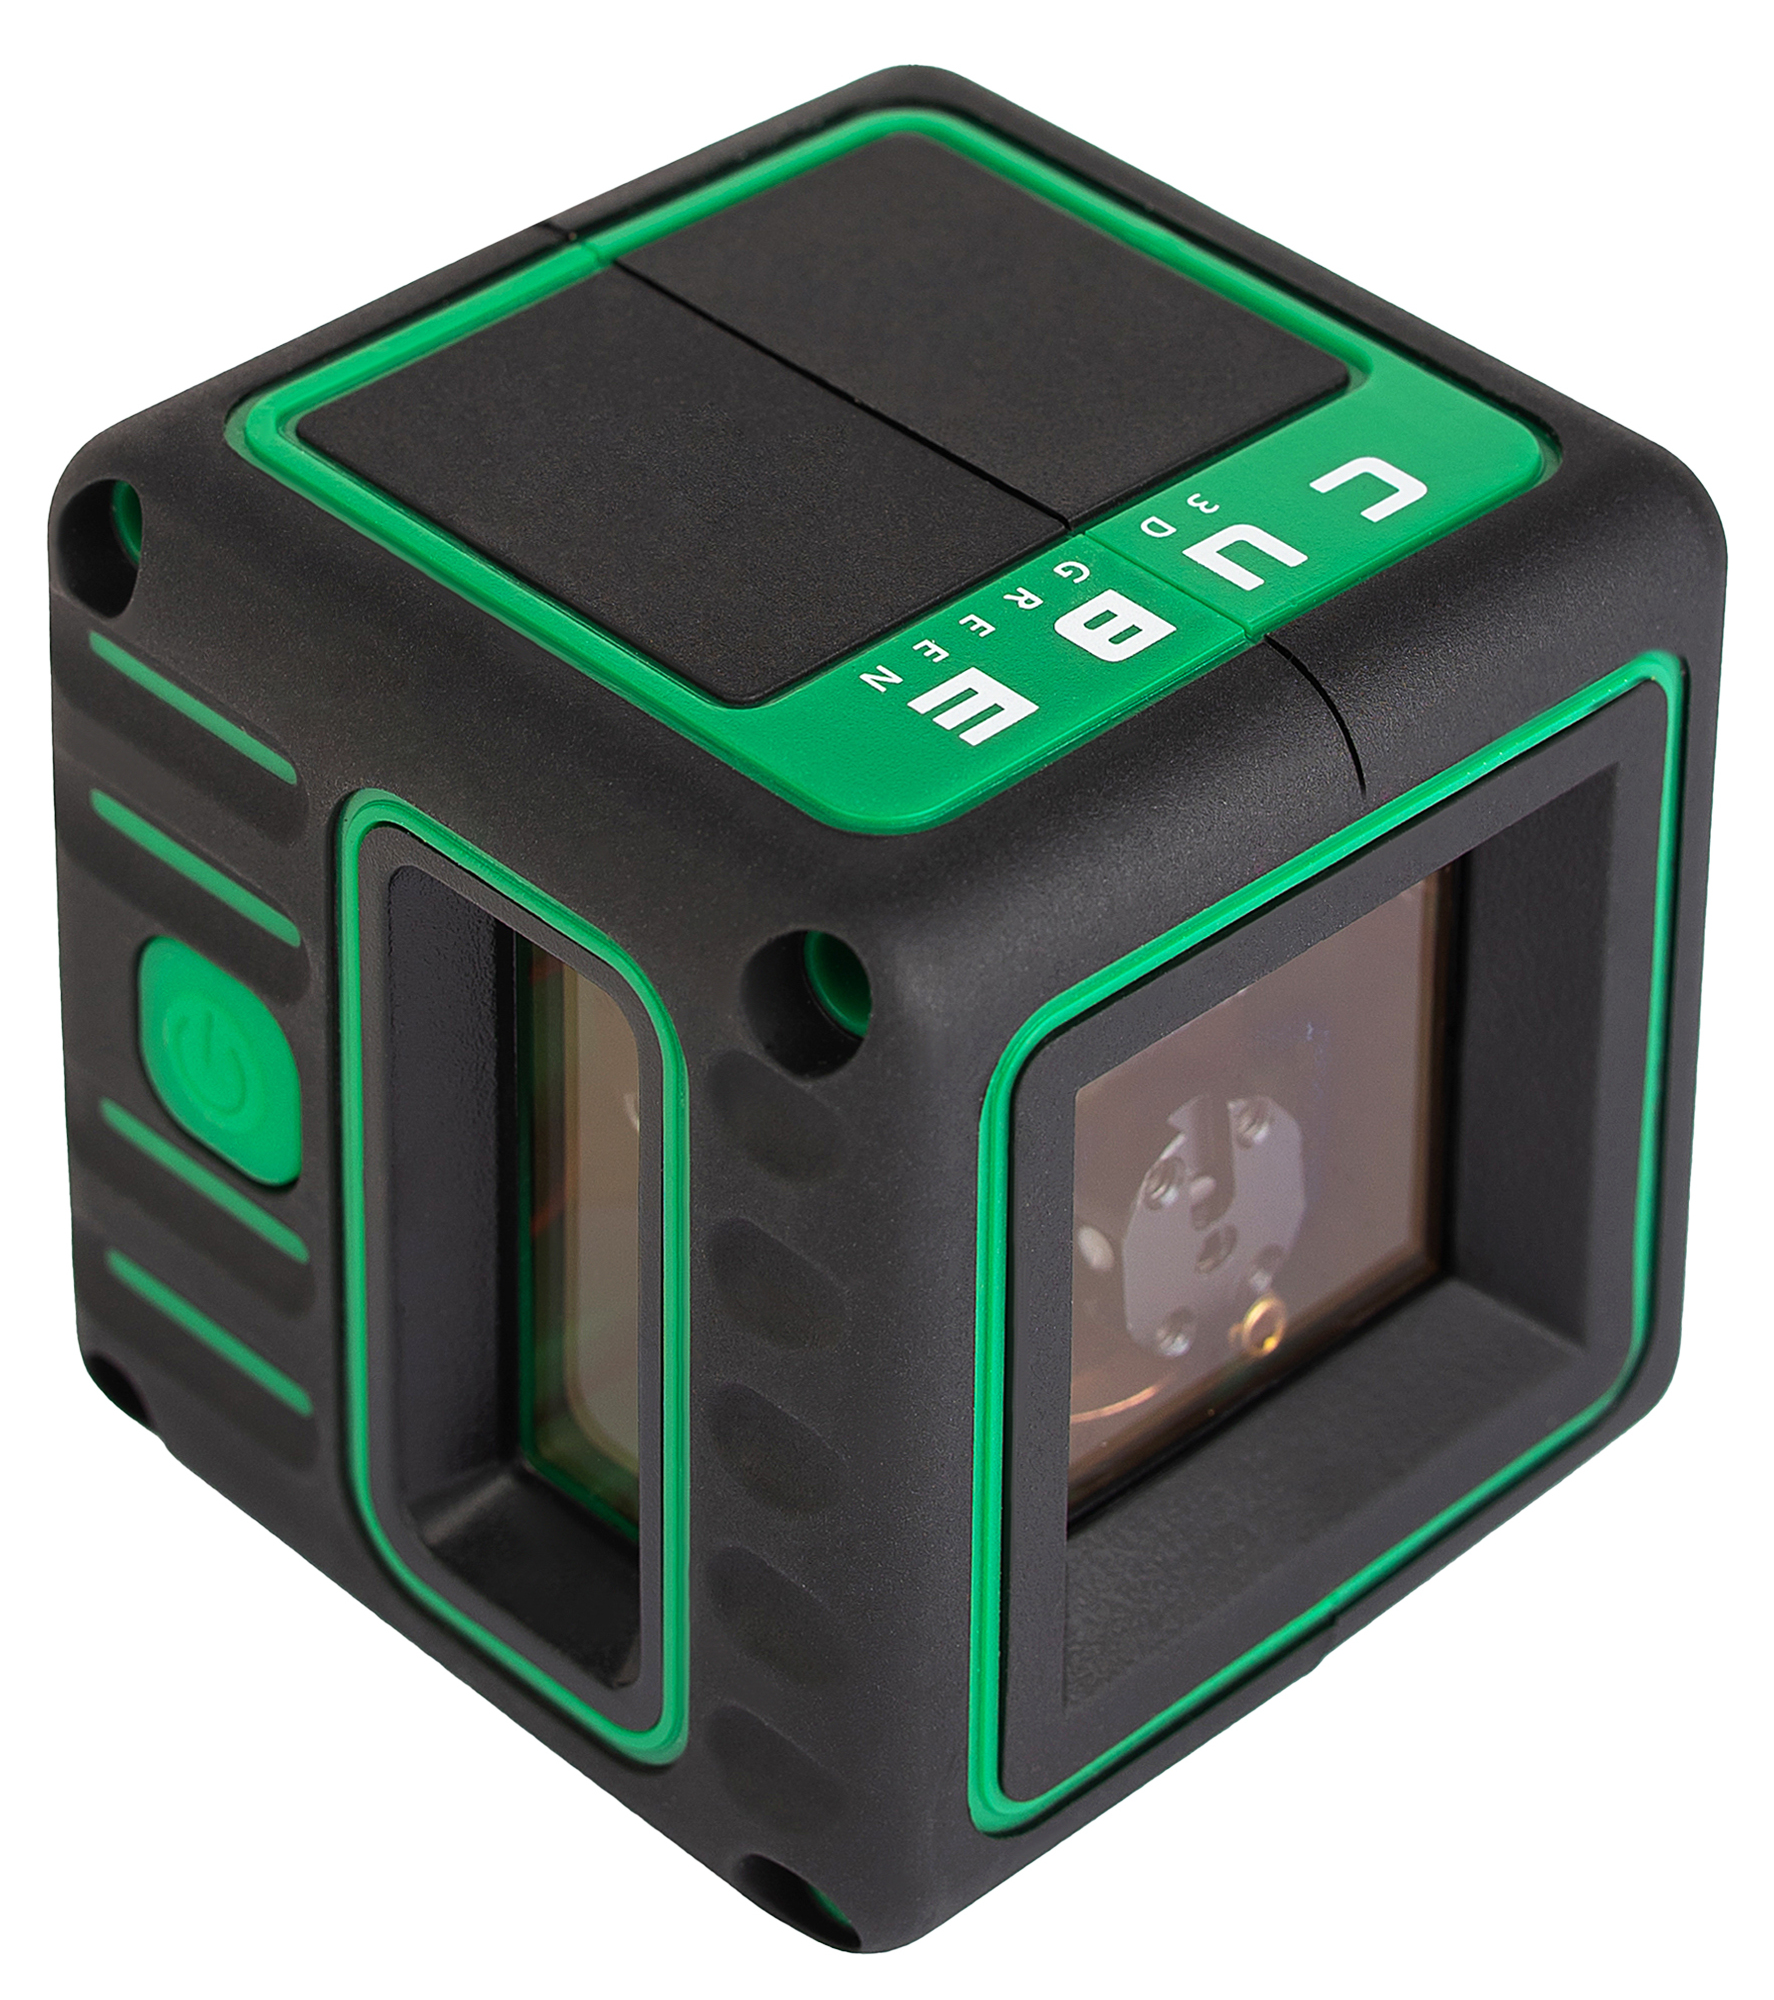 Cube 360 green professional edition. Ada instruments Cube. Лазерный уровень ada instruments Cube 3d Green professional Edition (а00545) со штативом.